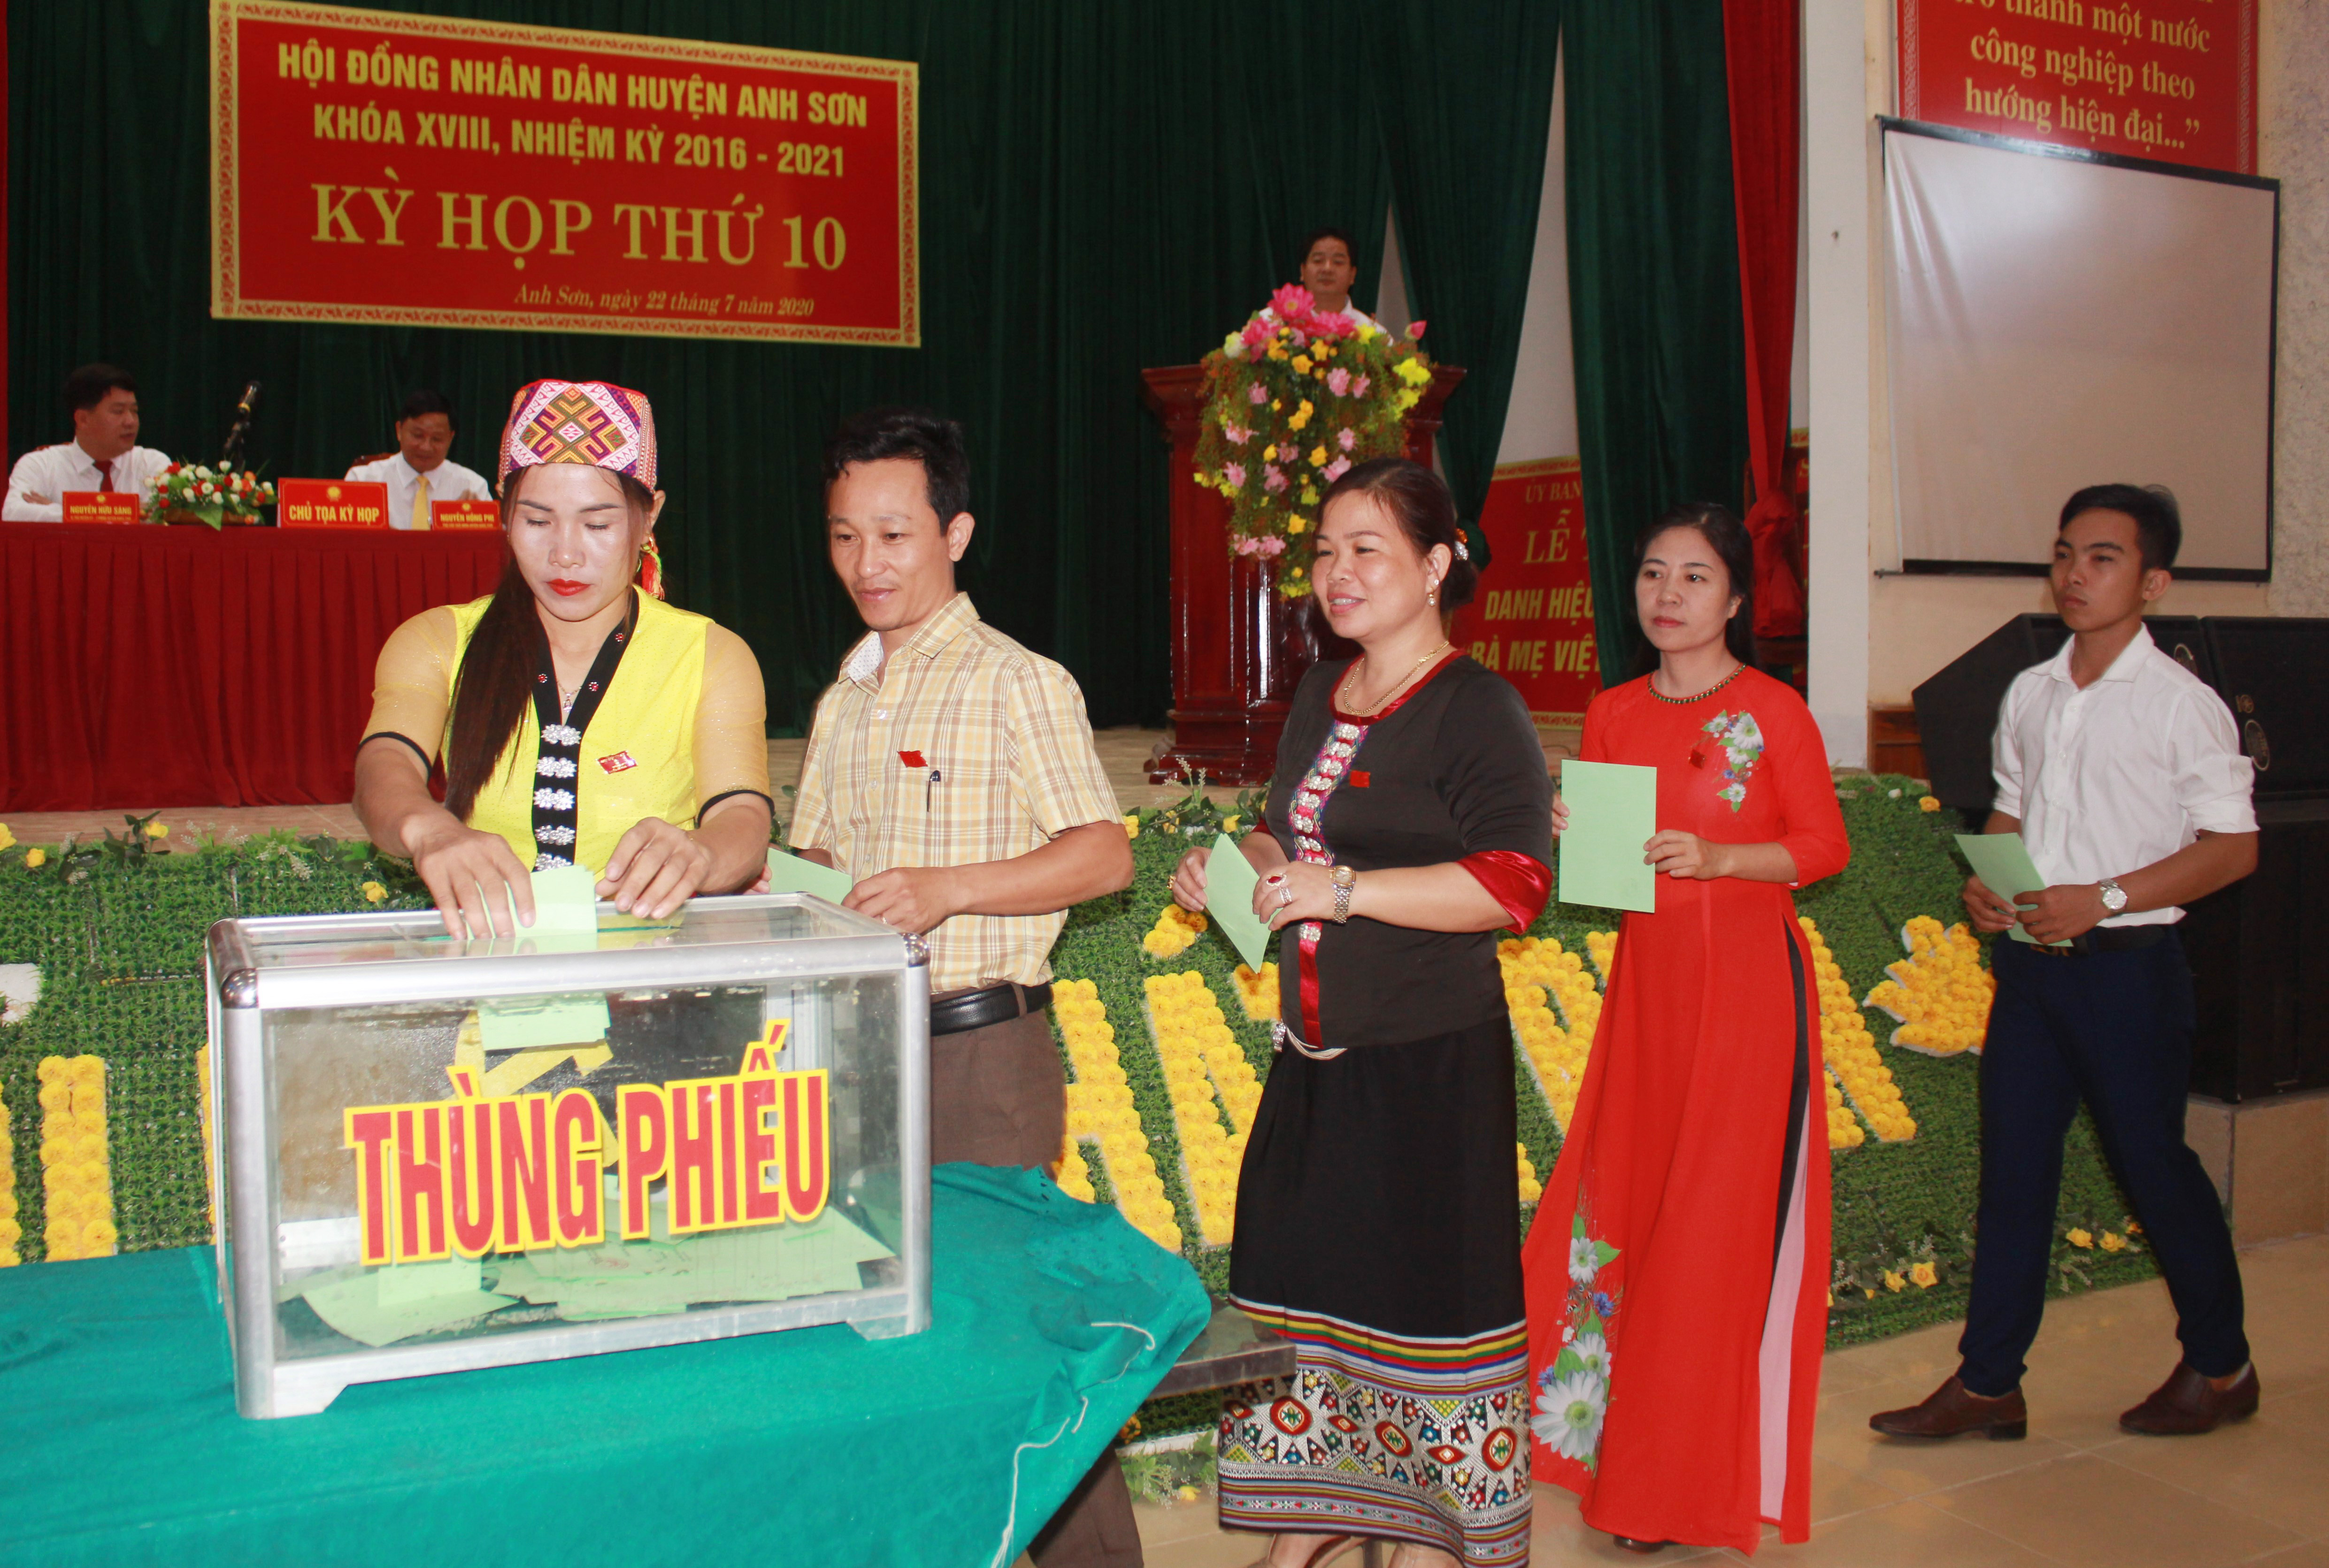 Các đại biểu HĐND bỏ phiếu bầu Chủ tịch HĐND và Chủ tịch UBND huyện Anh Sơn